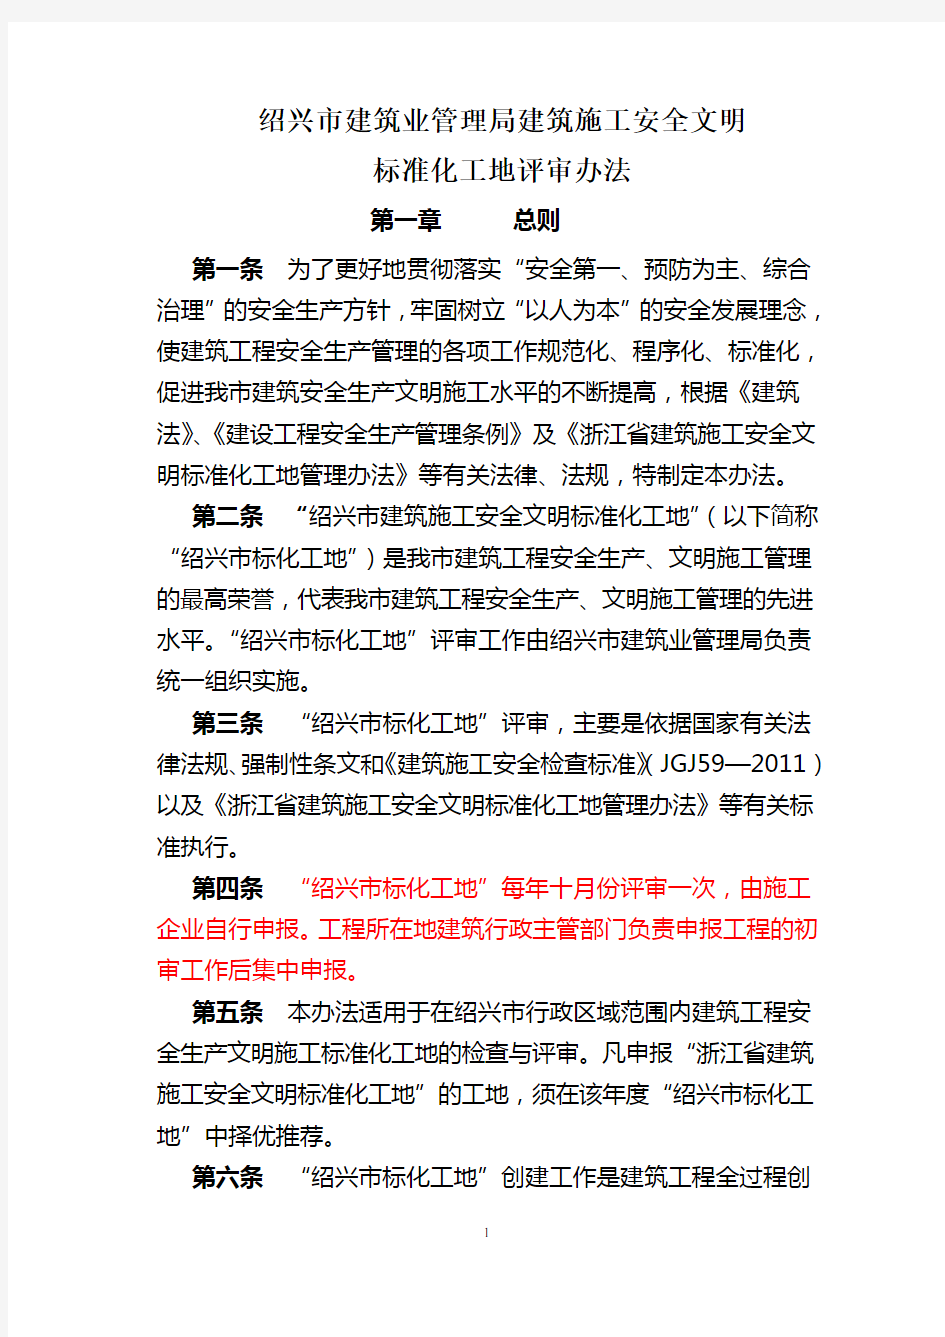 绍兴市建筑业管理局建筑施工安全文明标准化工地评审办法2012年5月1日起执行